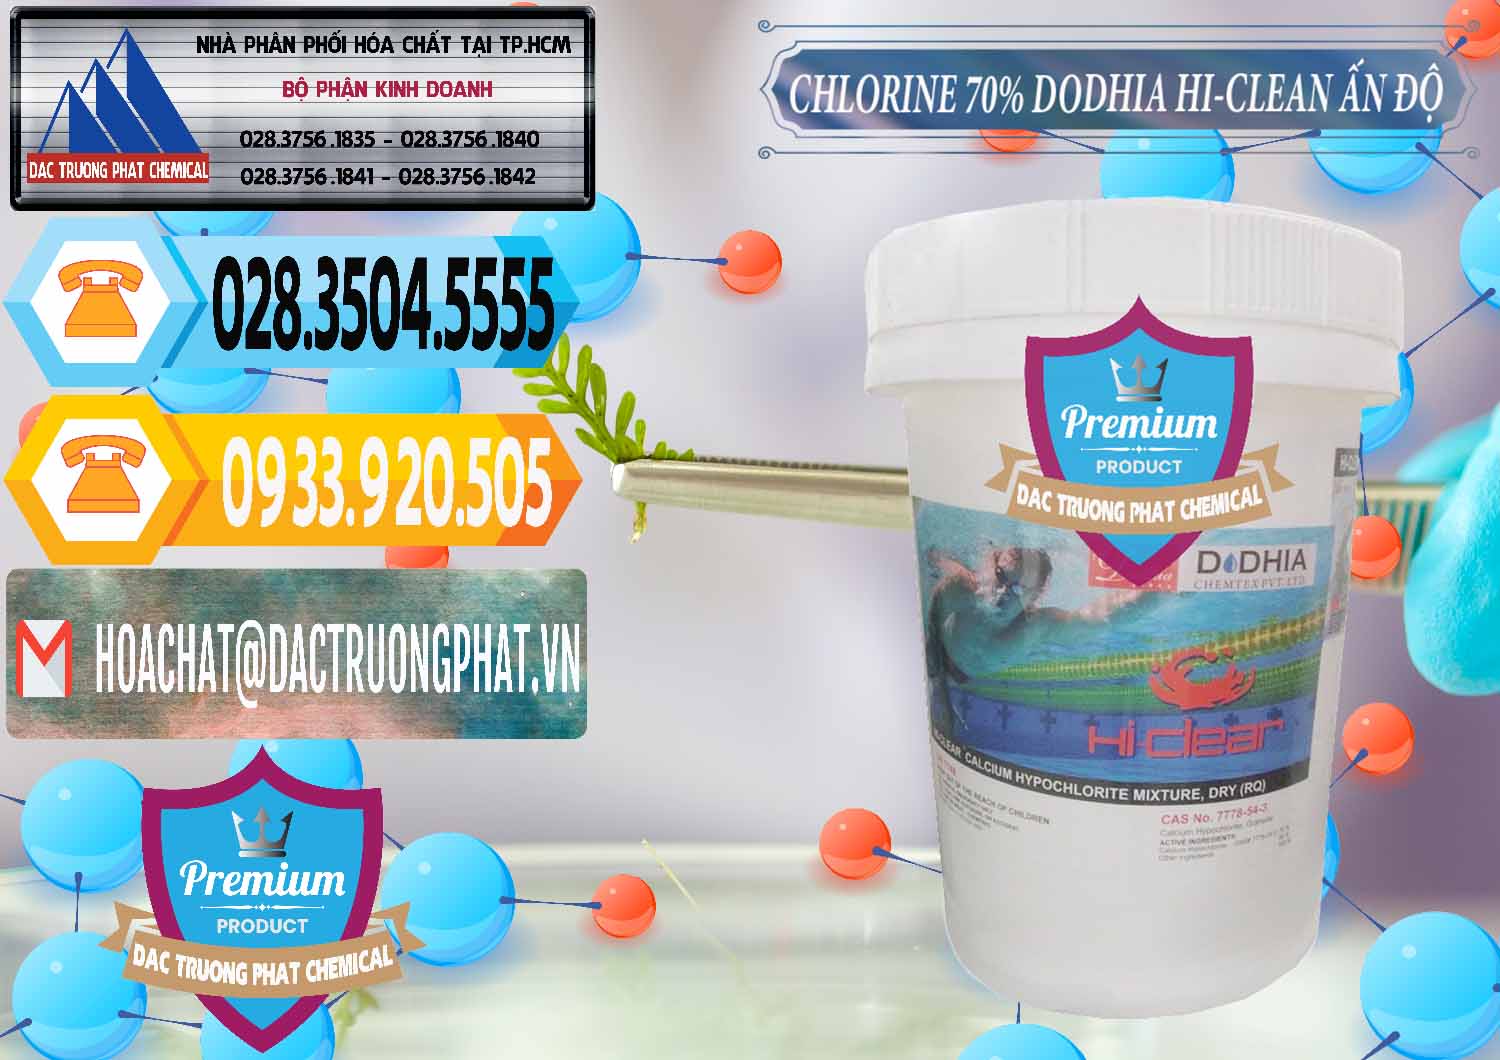 Chuyên kinh doanh ( bán ) Chlorine – Clorin 70% Dodhia Hi-Clean Ấn Độ India - 0214 - Công ty chuyên phân phối ( cung ứng ) hóa chất tại TP.HCM - hoachattayrua.net